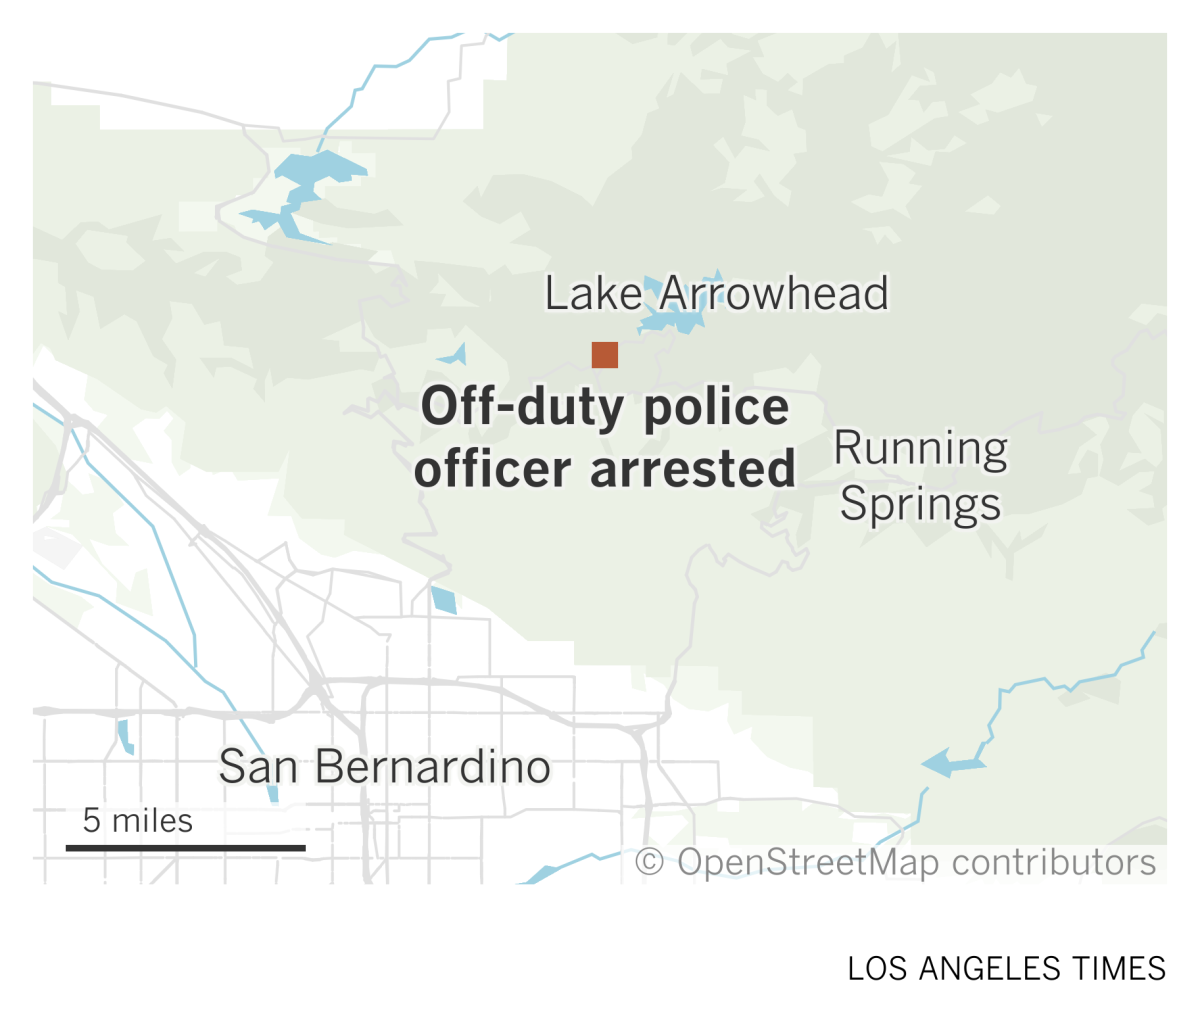 A map shows where an off-duty San Bernardino police officer was arrested near Lake Arrowhead